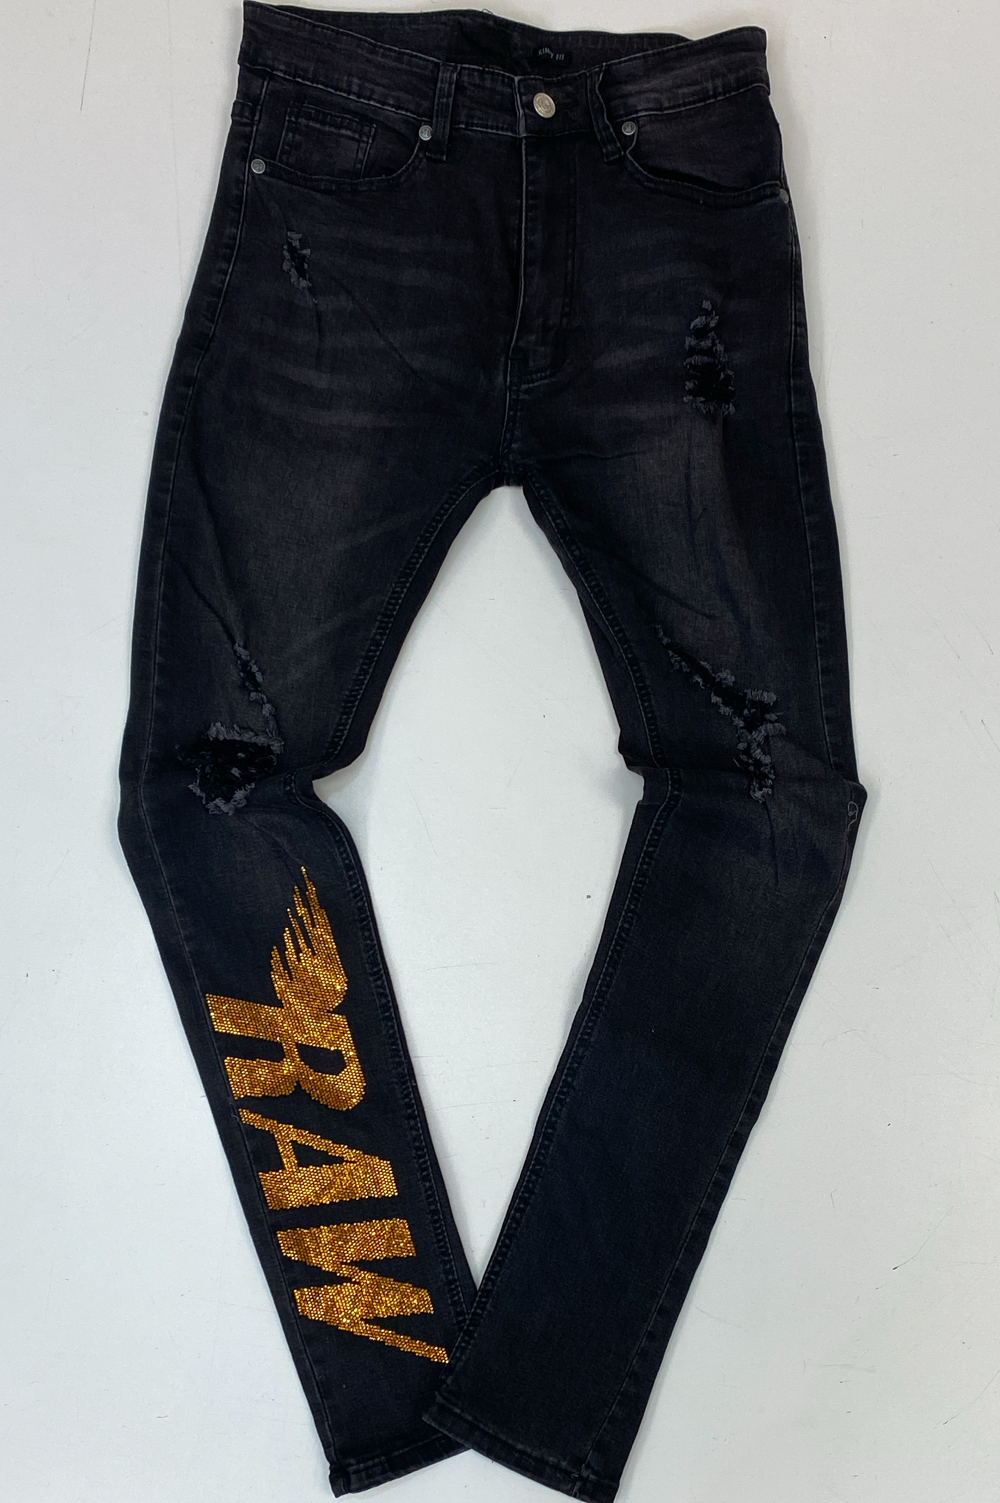 Rawyalty- studded raw denim jeans (black)